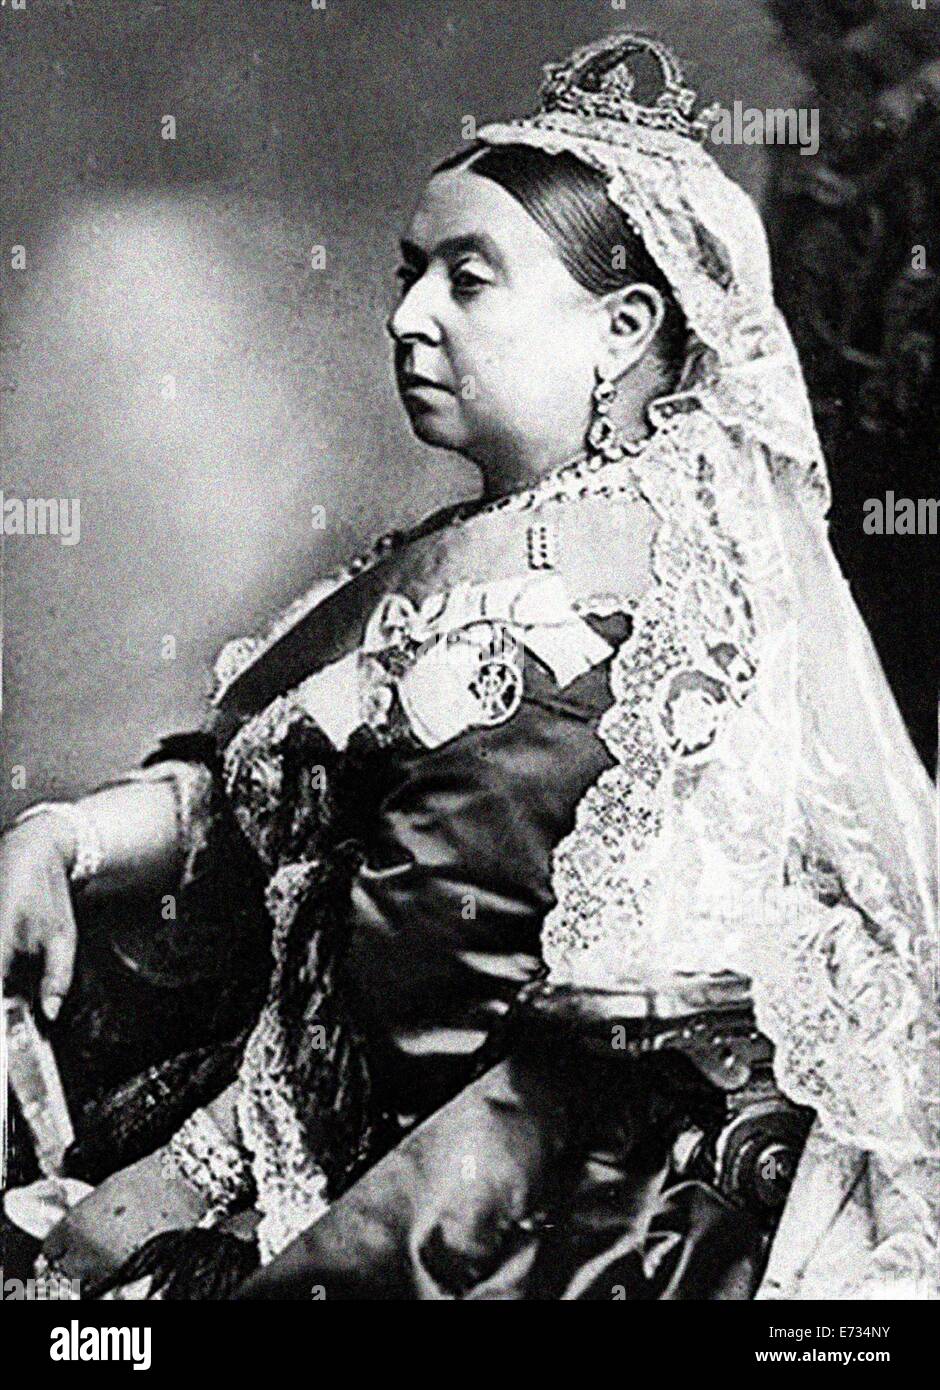 Queen Victoria während ihrer Diamond Jubilee. Aus den Archiven von Presse Portrait Service (ehemals Presse Portrait Bureau) Neuer Scan. Stockfoto